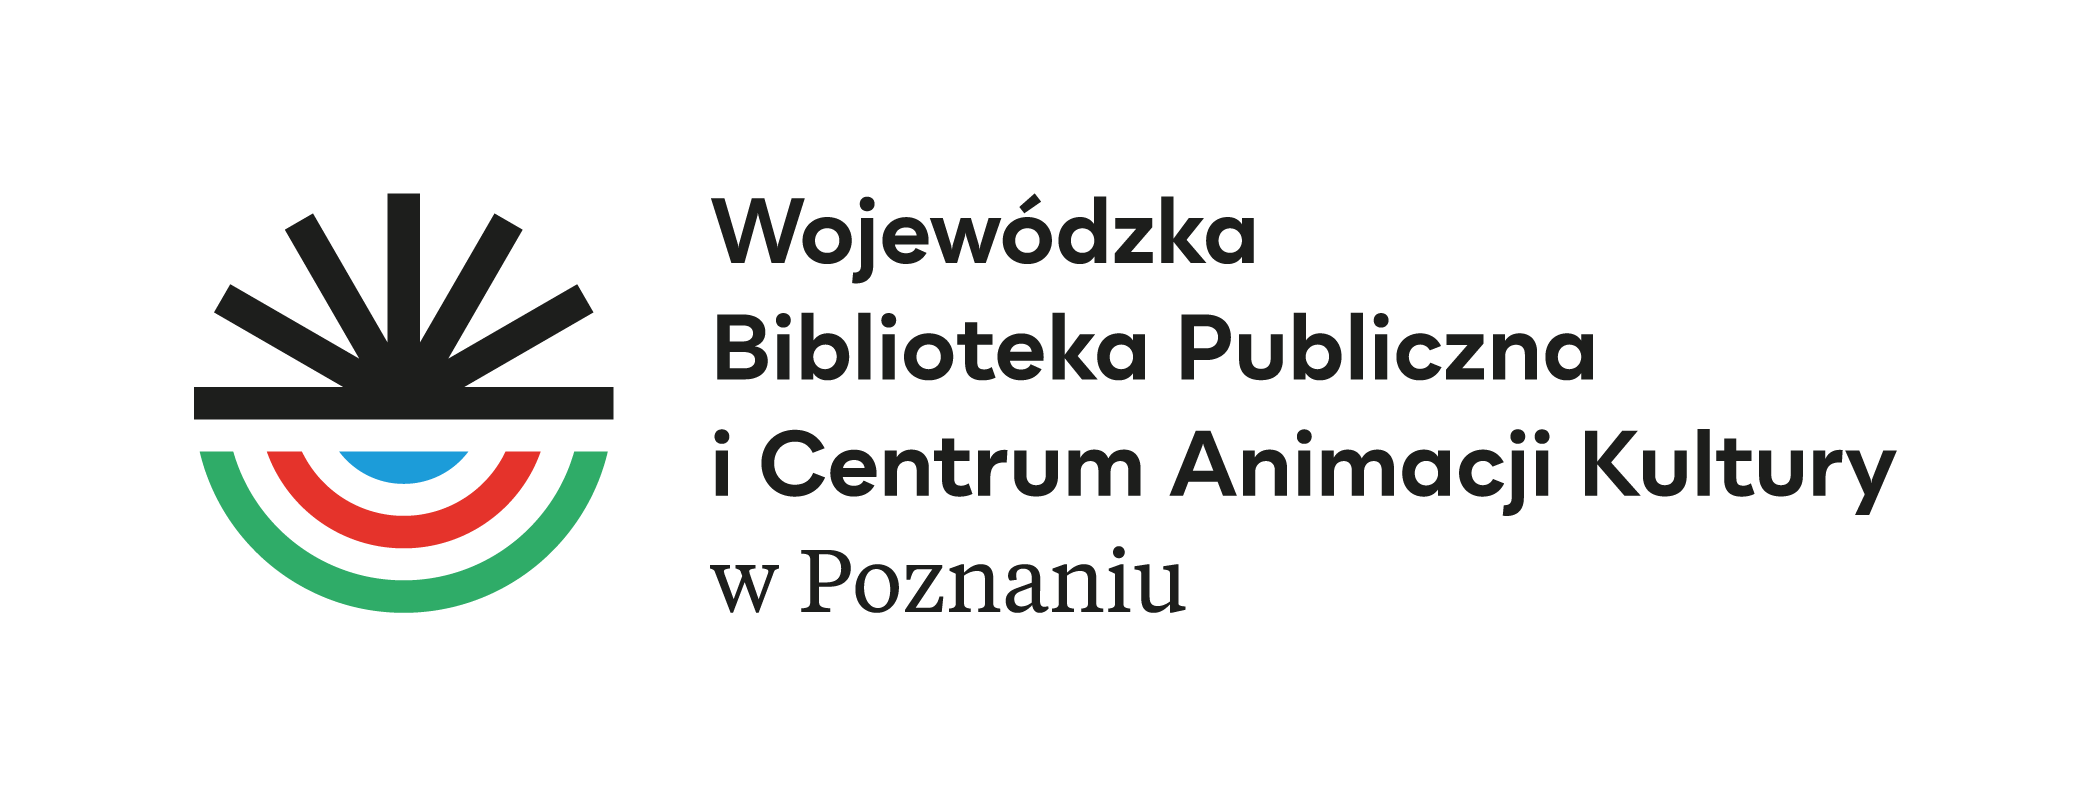 Wojewódzka Biblioteka Publiczna  i Centrum Animacji Kultury w Poznaniu 